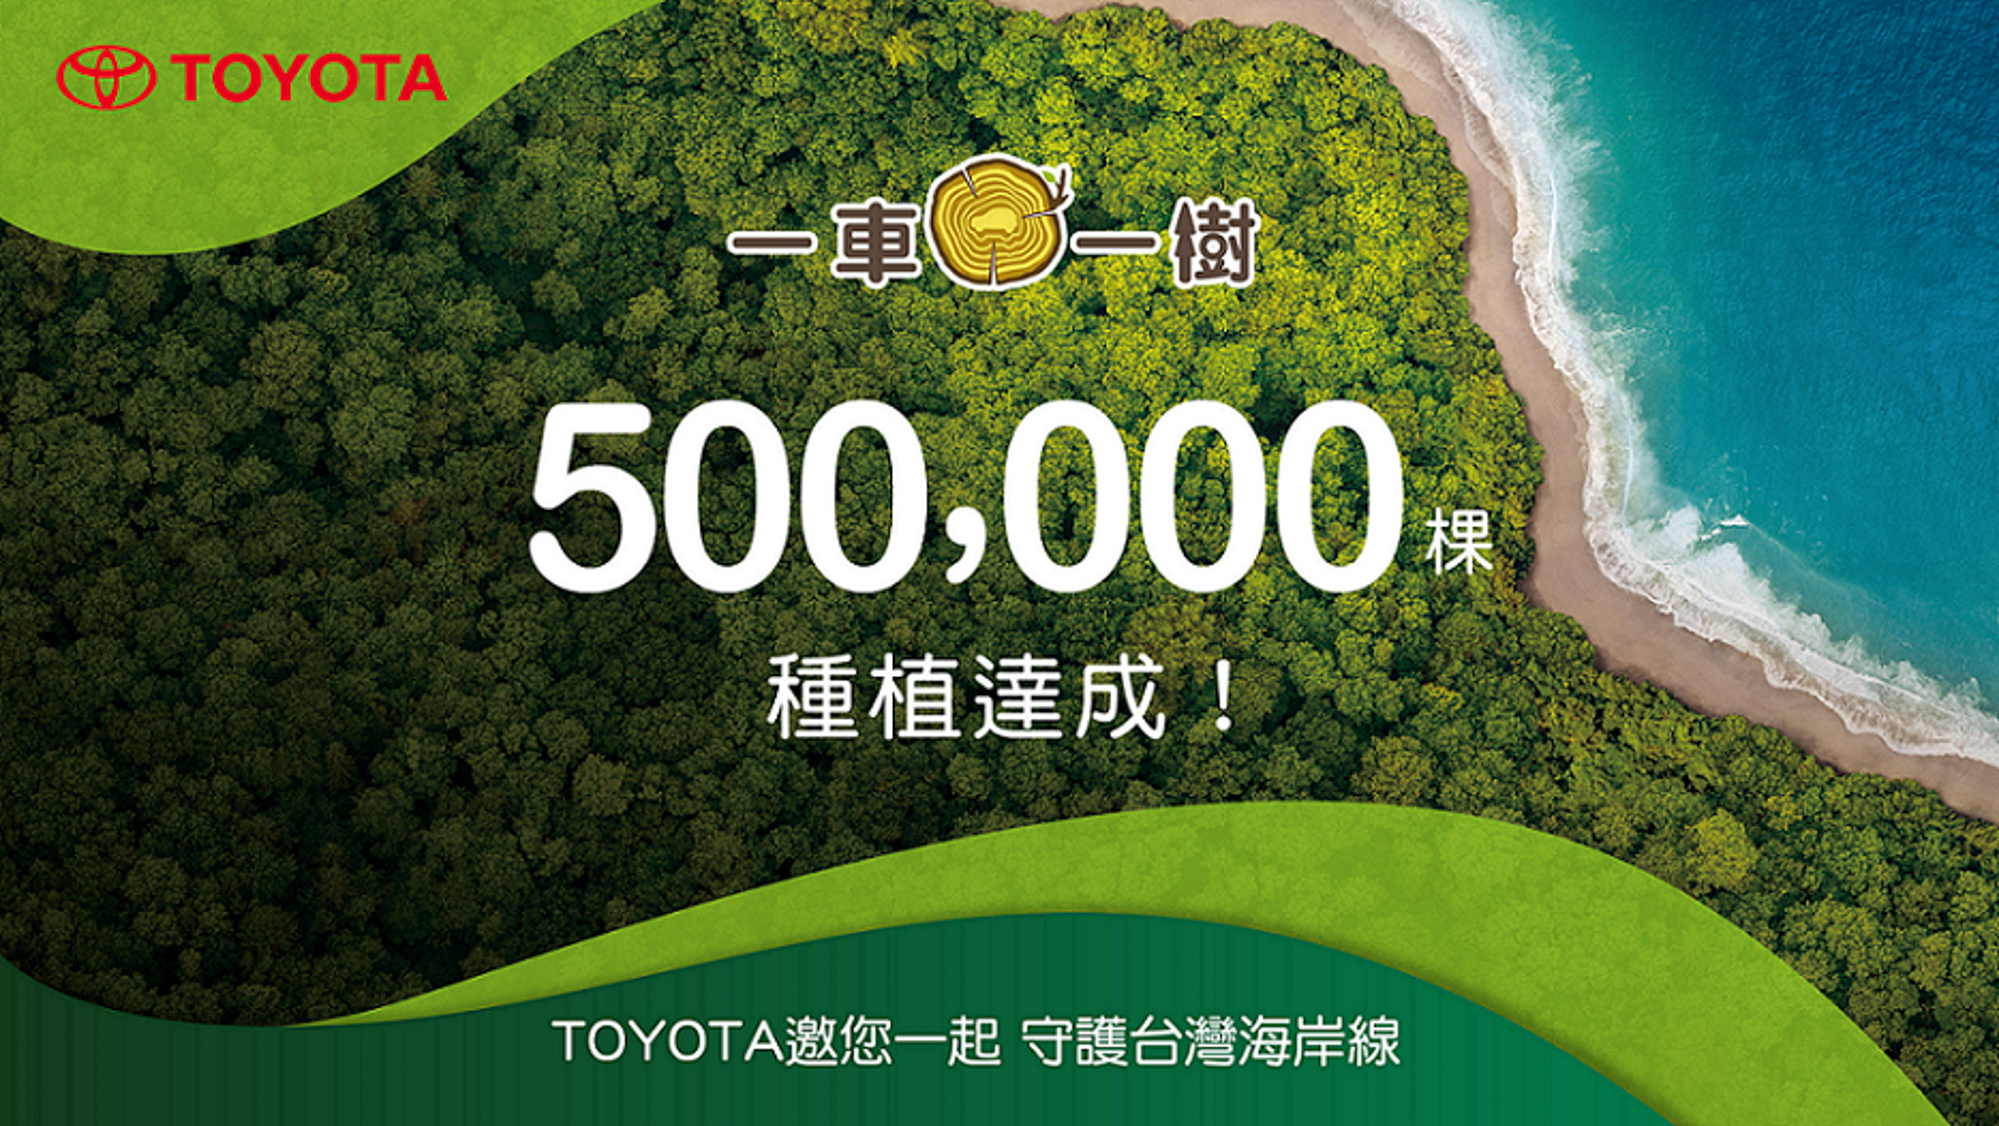 和泰汽車自 2017 年開始，展開「TOYOTA 一車一樹」公益計畫，克服海岸造林困境，2021 年 9 月達成「種植 50 萬棵里程碑」。